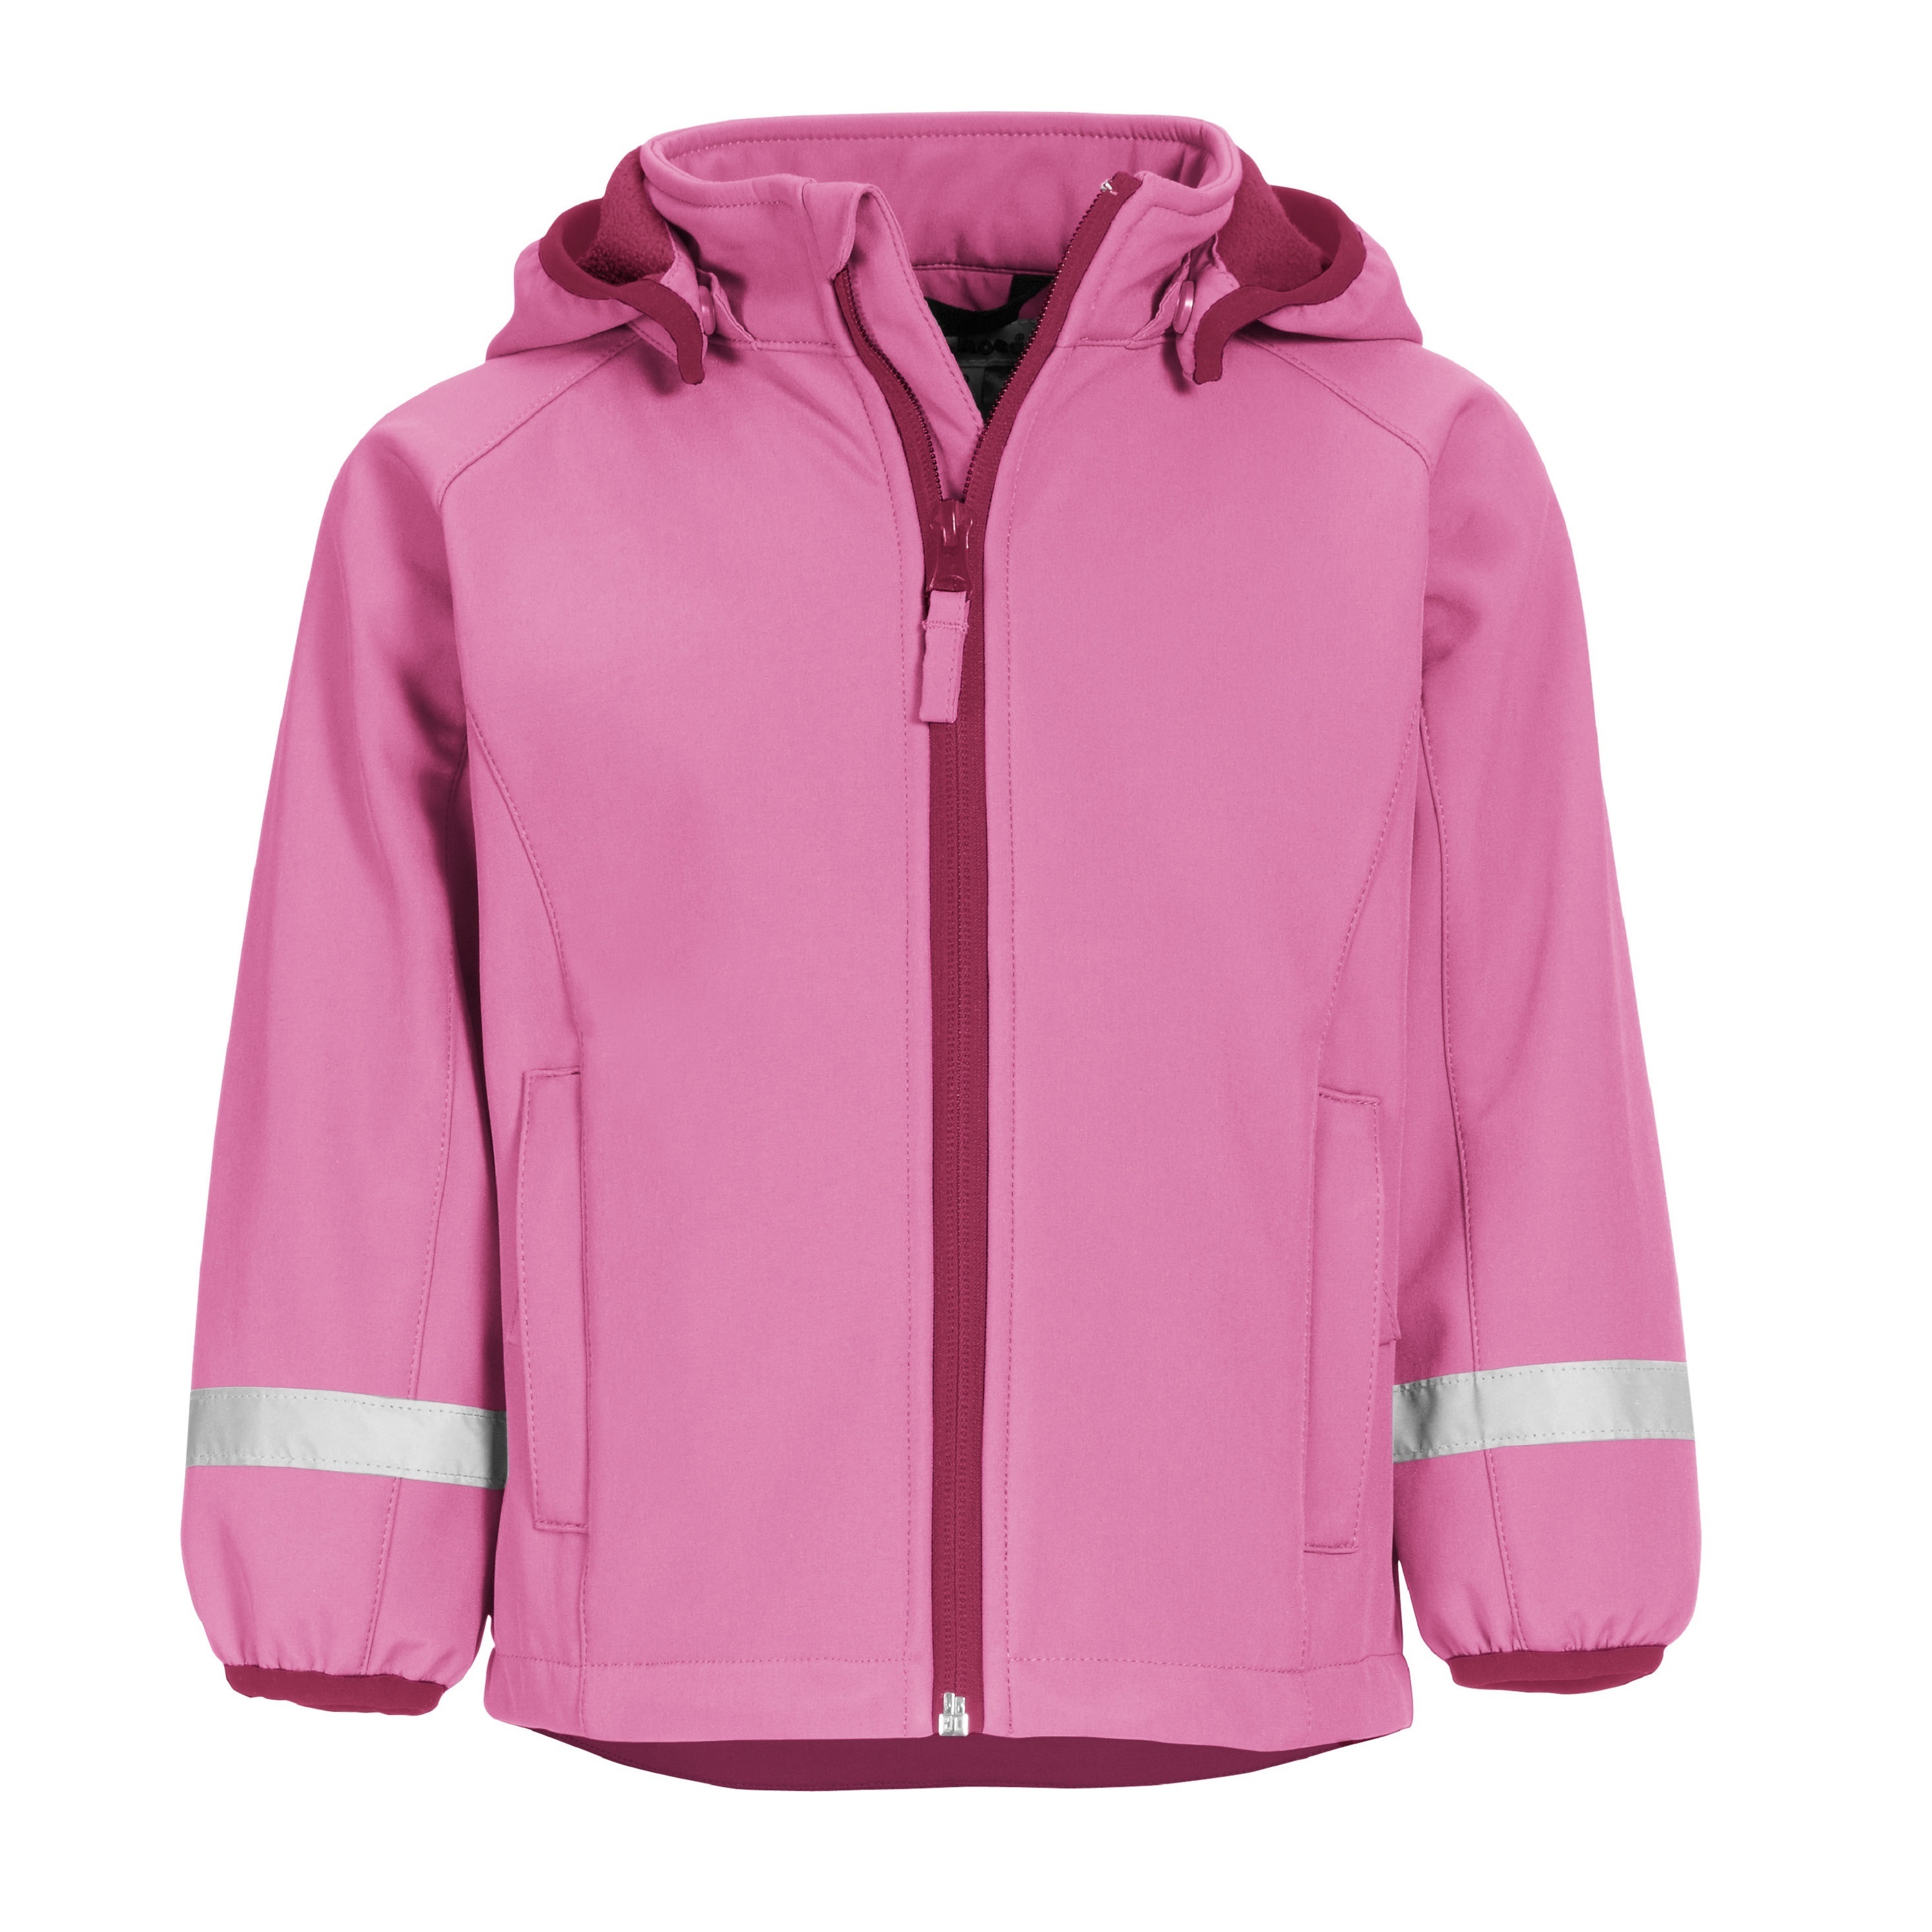 Куртка детская Playshoes 430110, розовый, 140 непромокаемая детская куртка без подклада акула playshoes синий